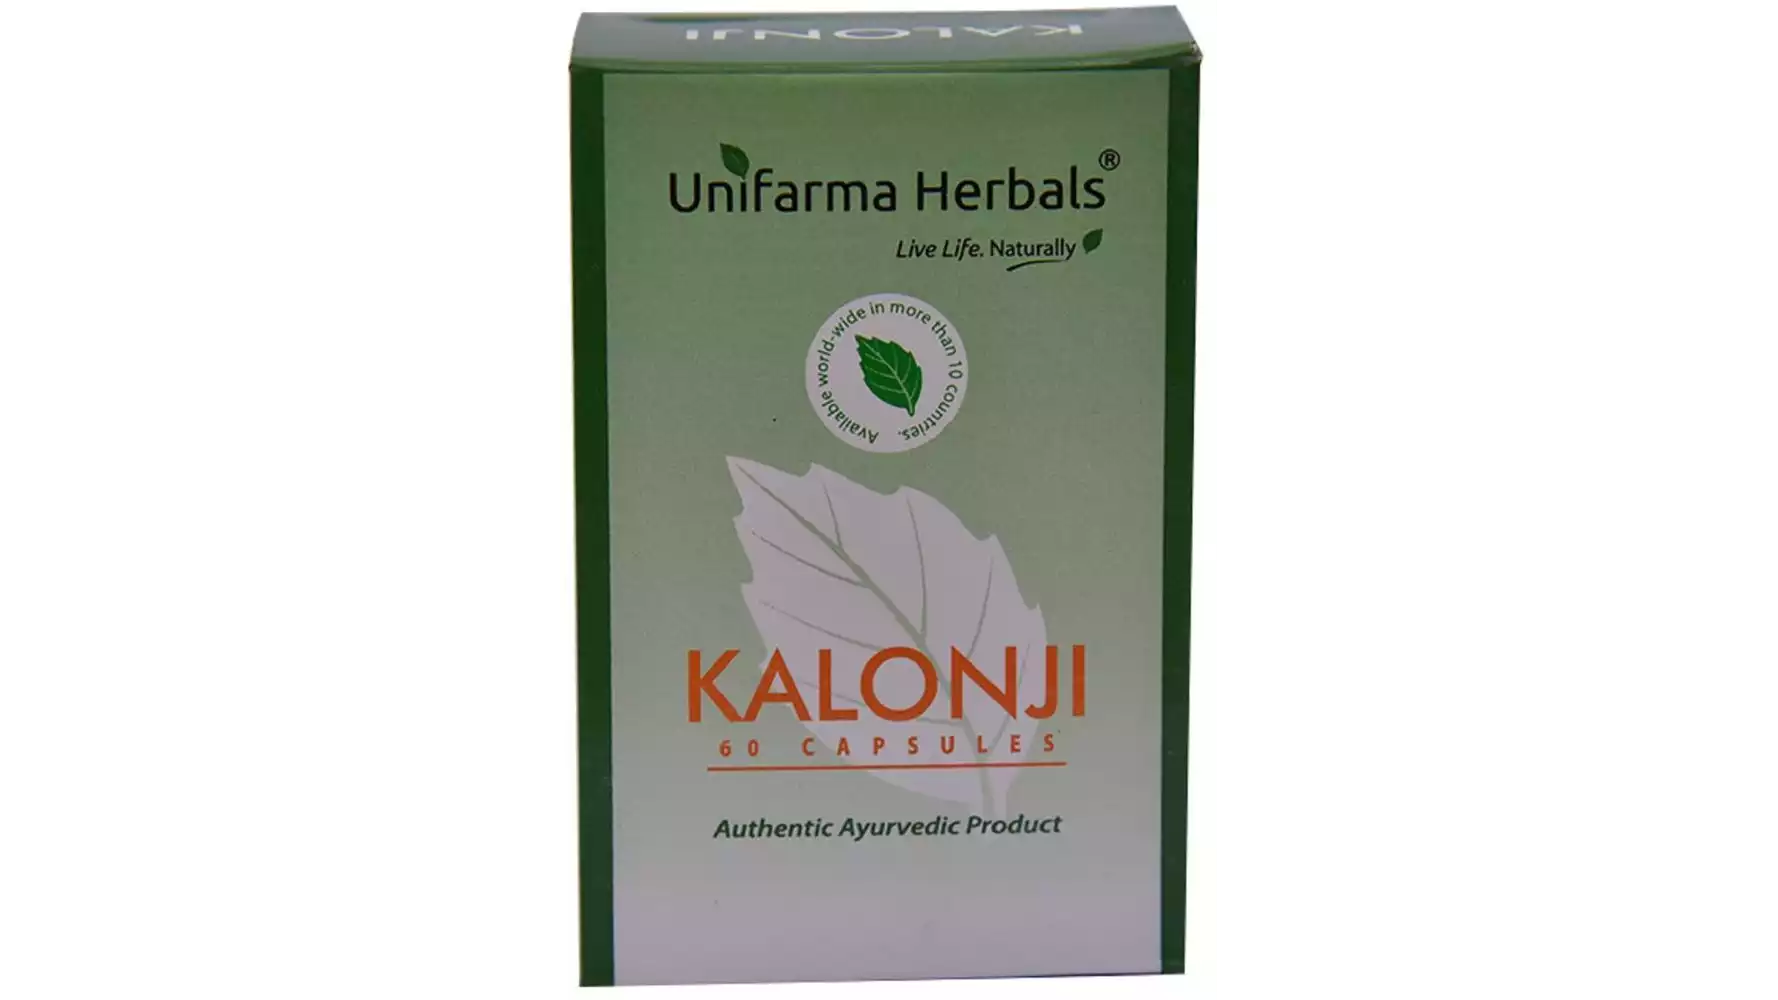 Unifarma Herbals Kalonji Caps (60caps)